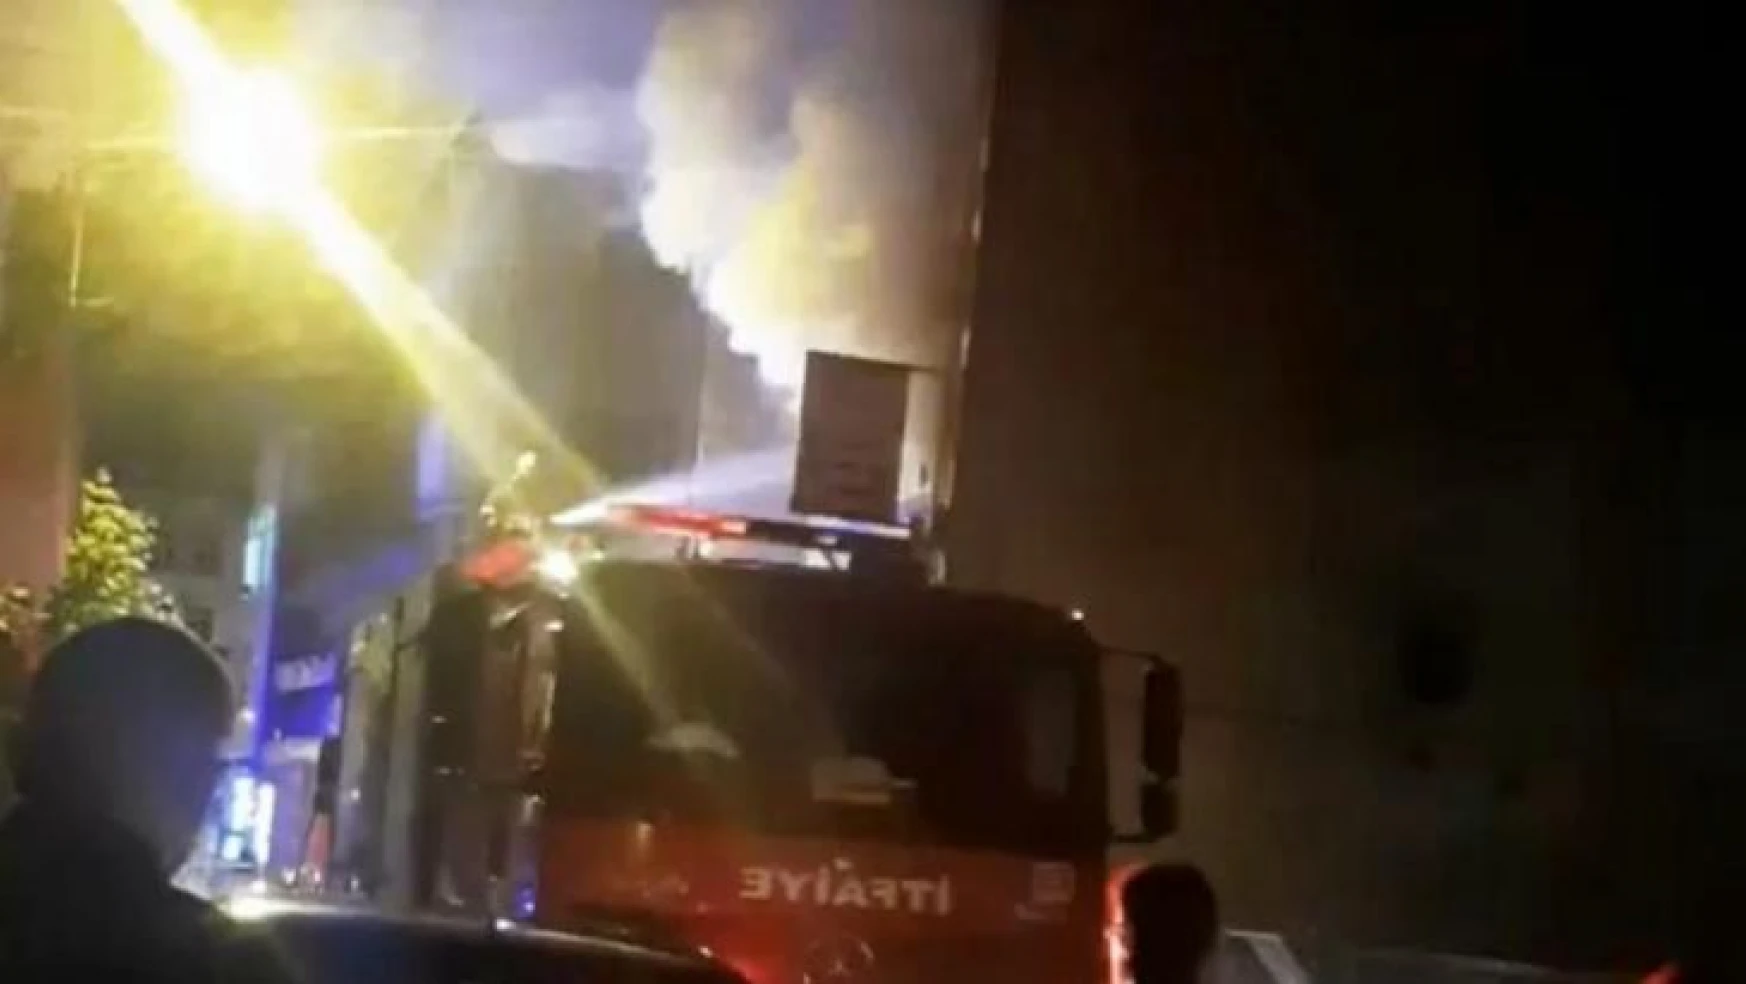 Sakarya'da evde çıkan yangında 2 kişi dumandan etkilendi